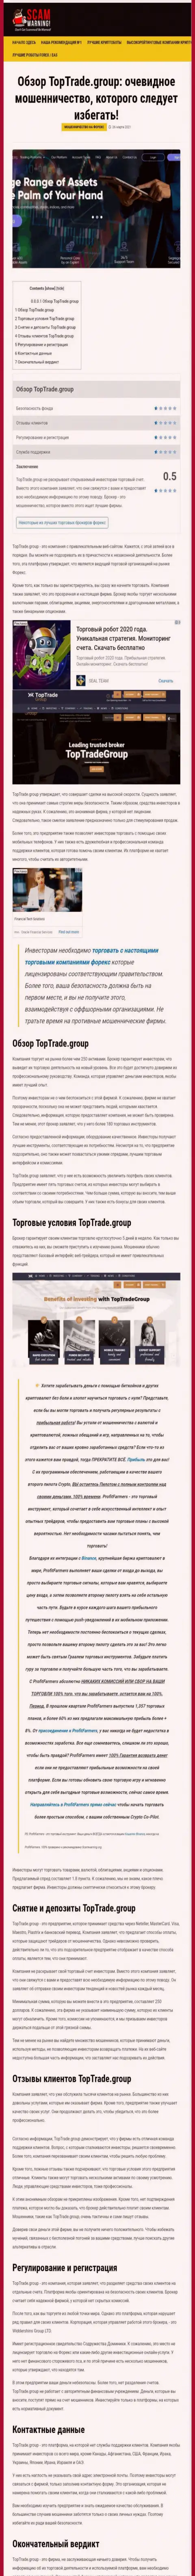 Статья с разбором противозаконных действий TopTrade Group, нацеленных на лохотрон клиентов